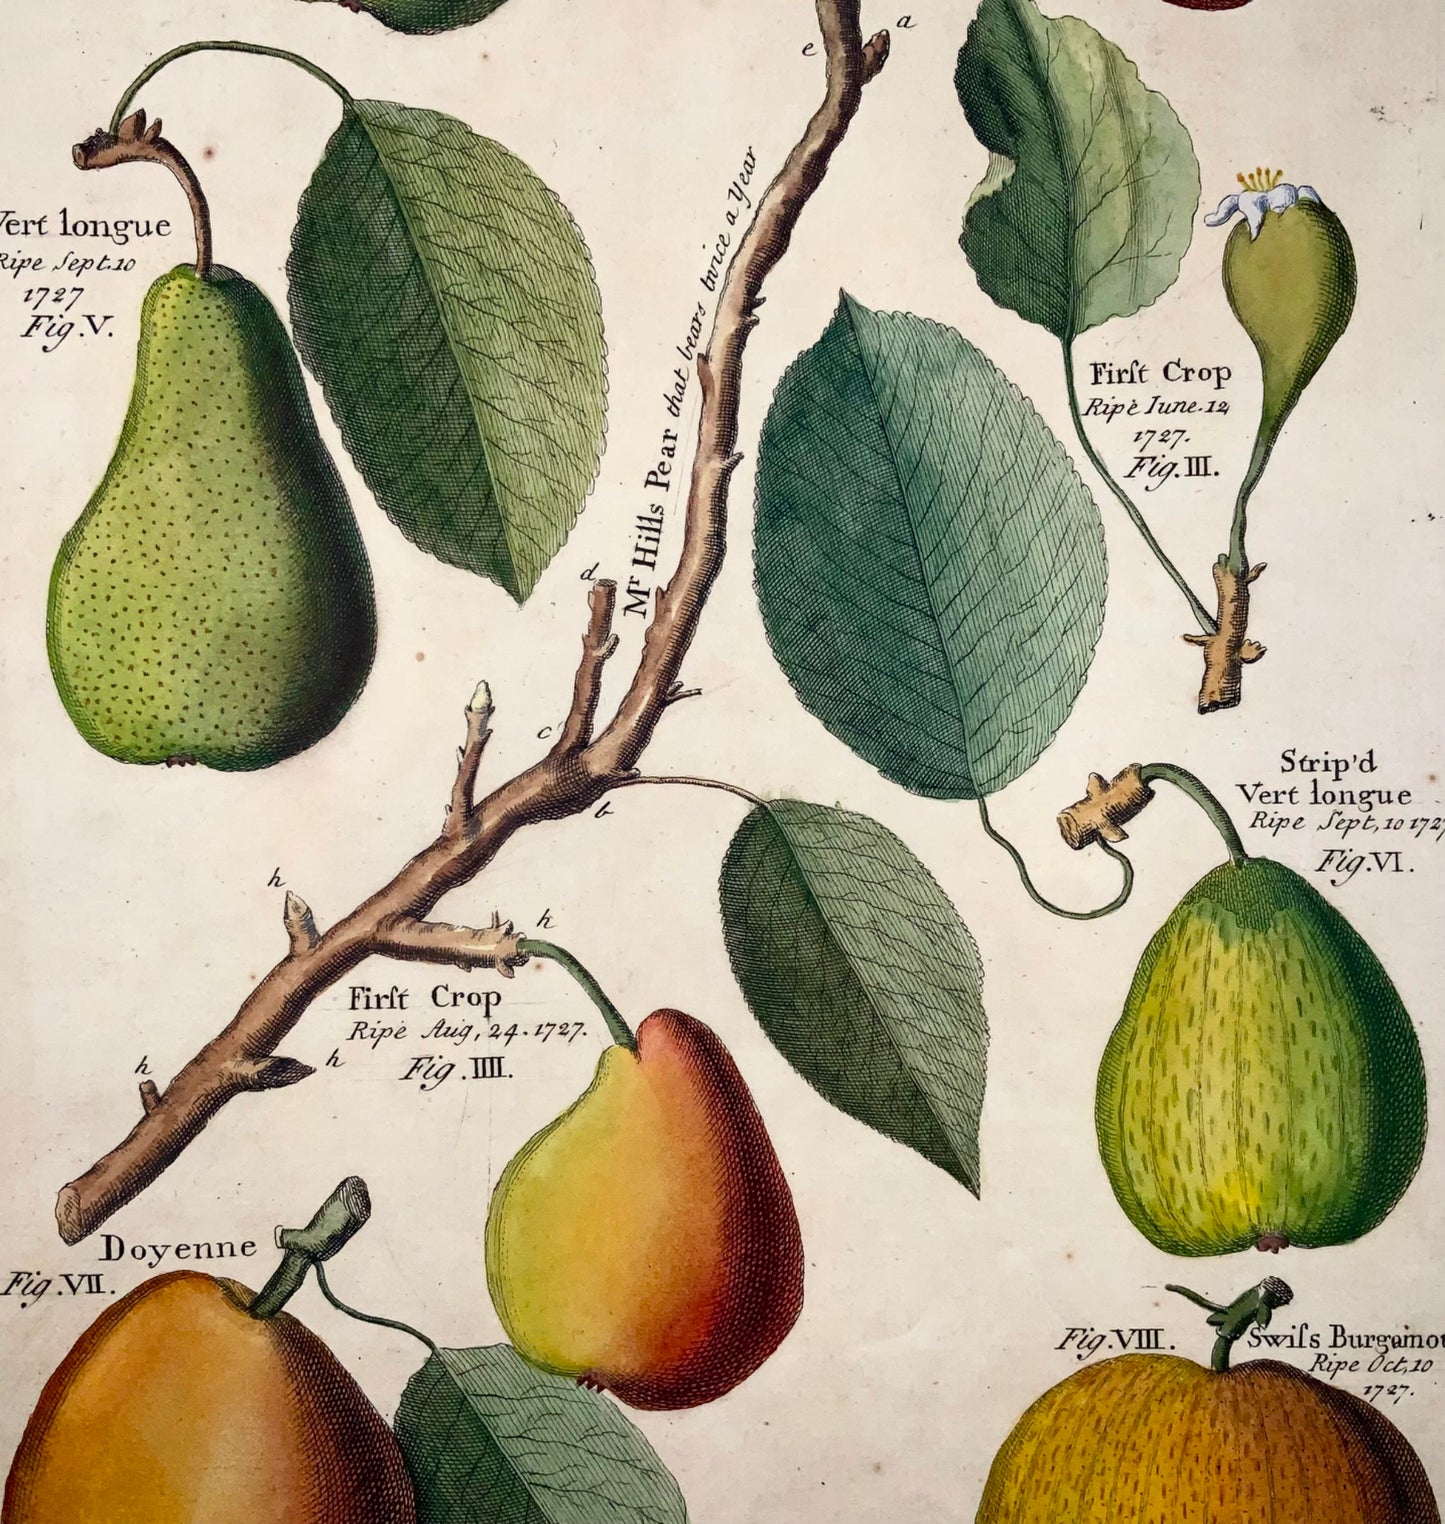 1729 Pomona: pere, botanica, Batty Langley (nato nel 1696), foglio grande, frutta 